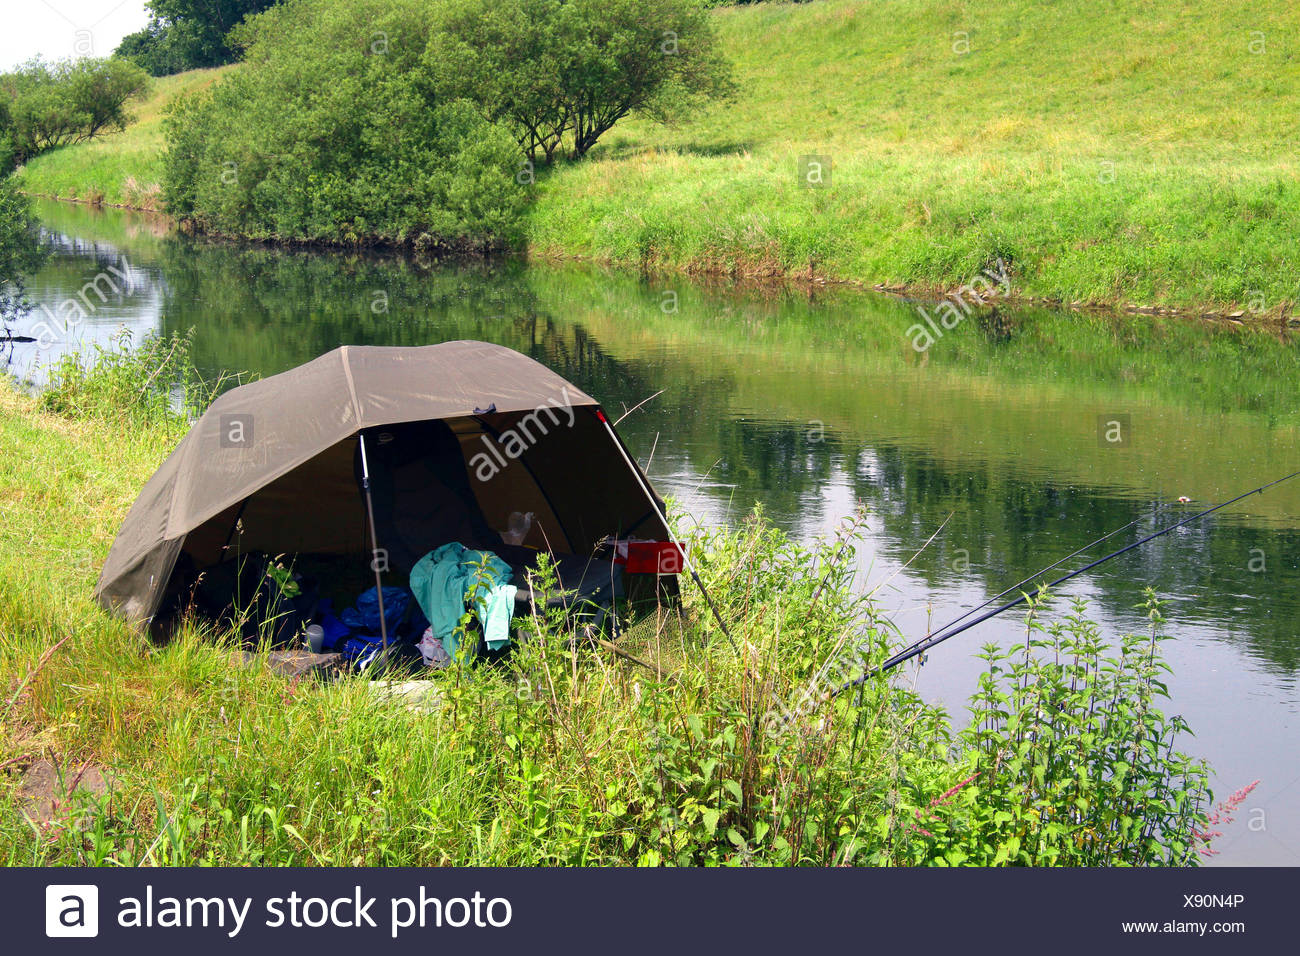 Zelt der Angler am Fluss, Deutschland, Nordrhein-Westfalen Stockfotografie  - Alamy